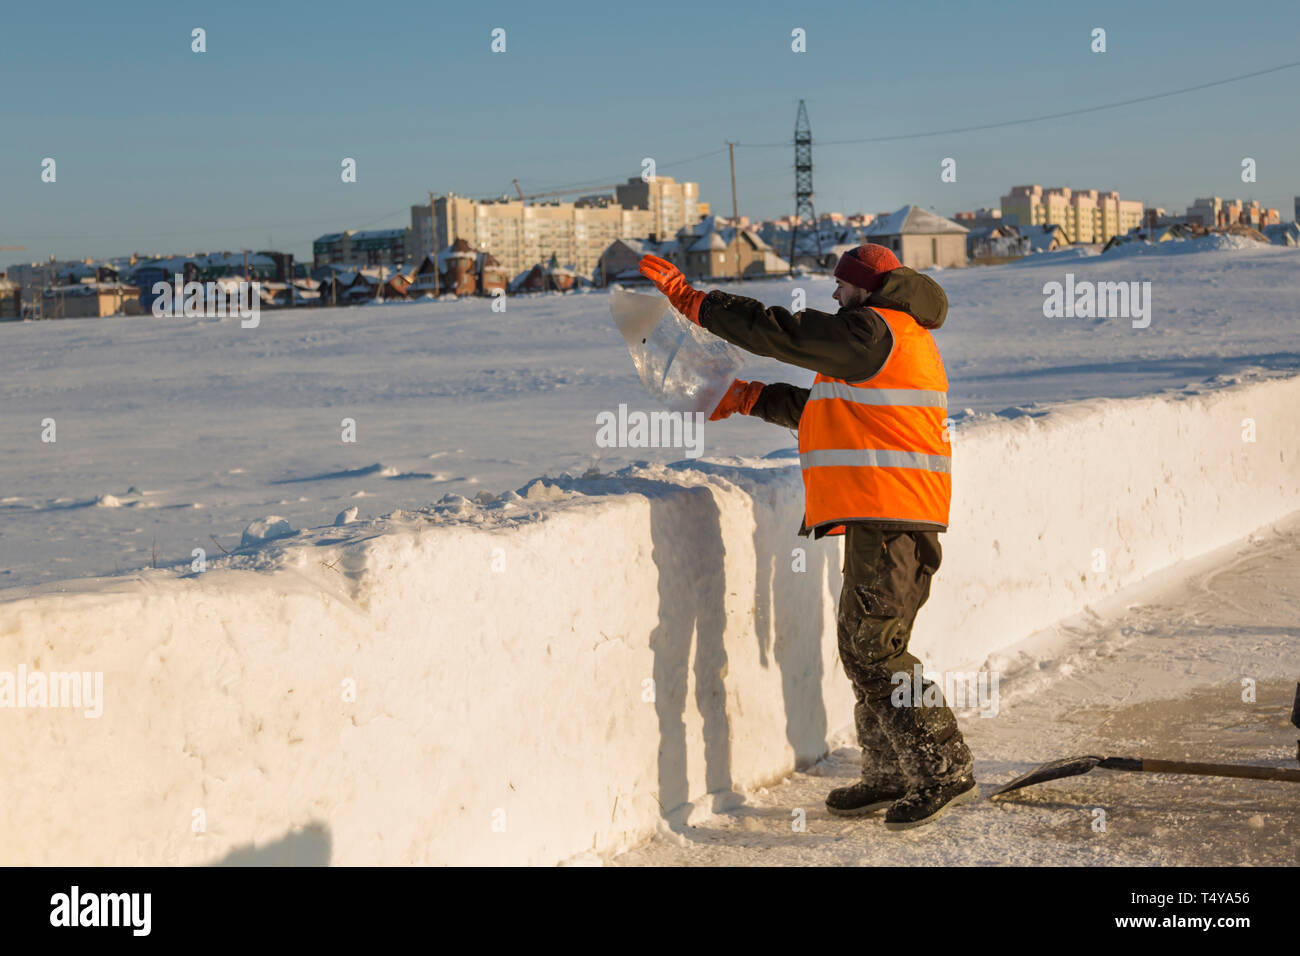 Un trabajador en un chaleco reflectante naranja lanza un bloque de hielo sobre un montículo de nieve. Foto de stock